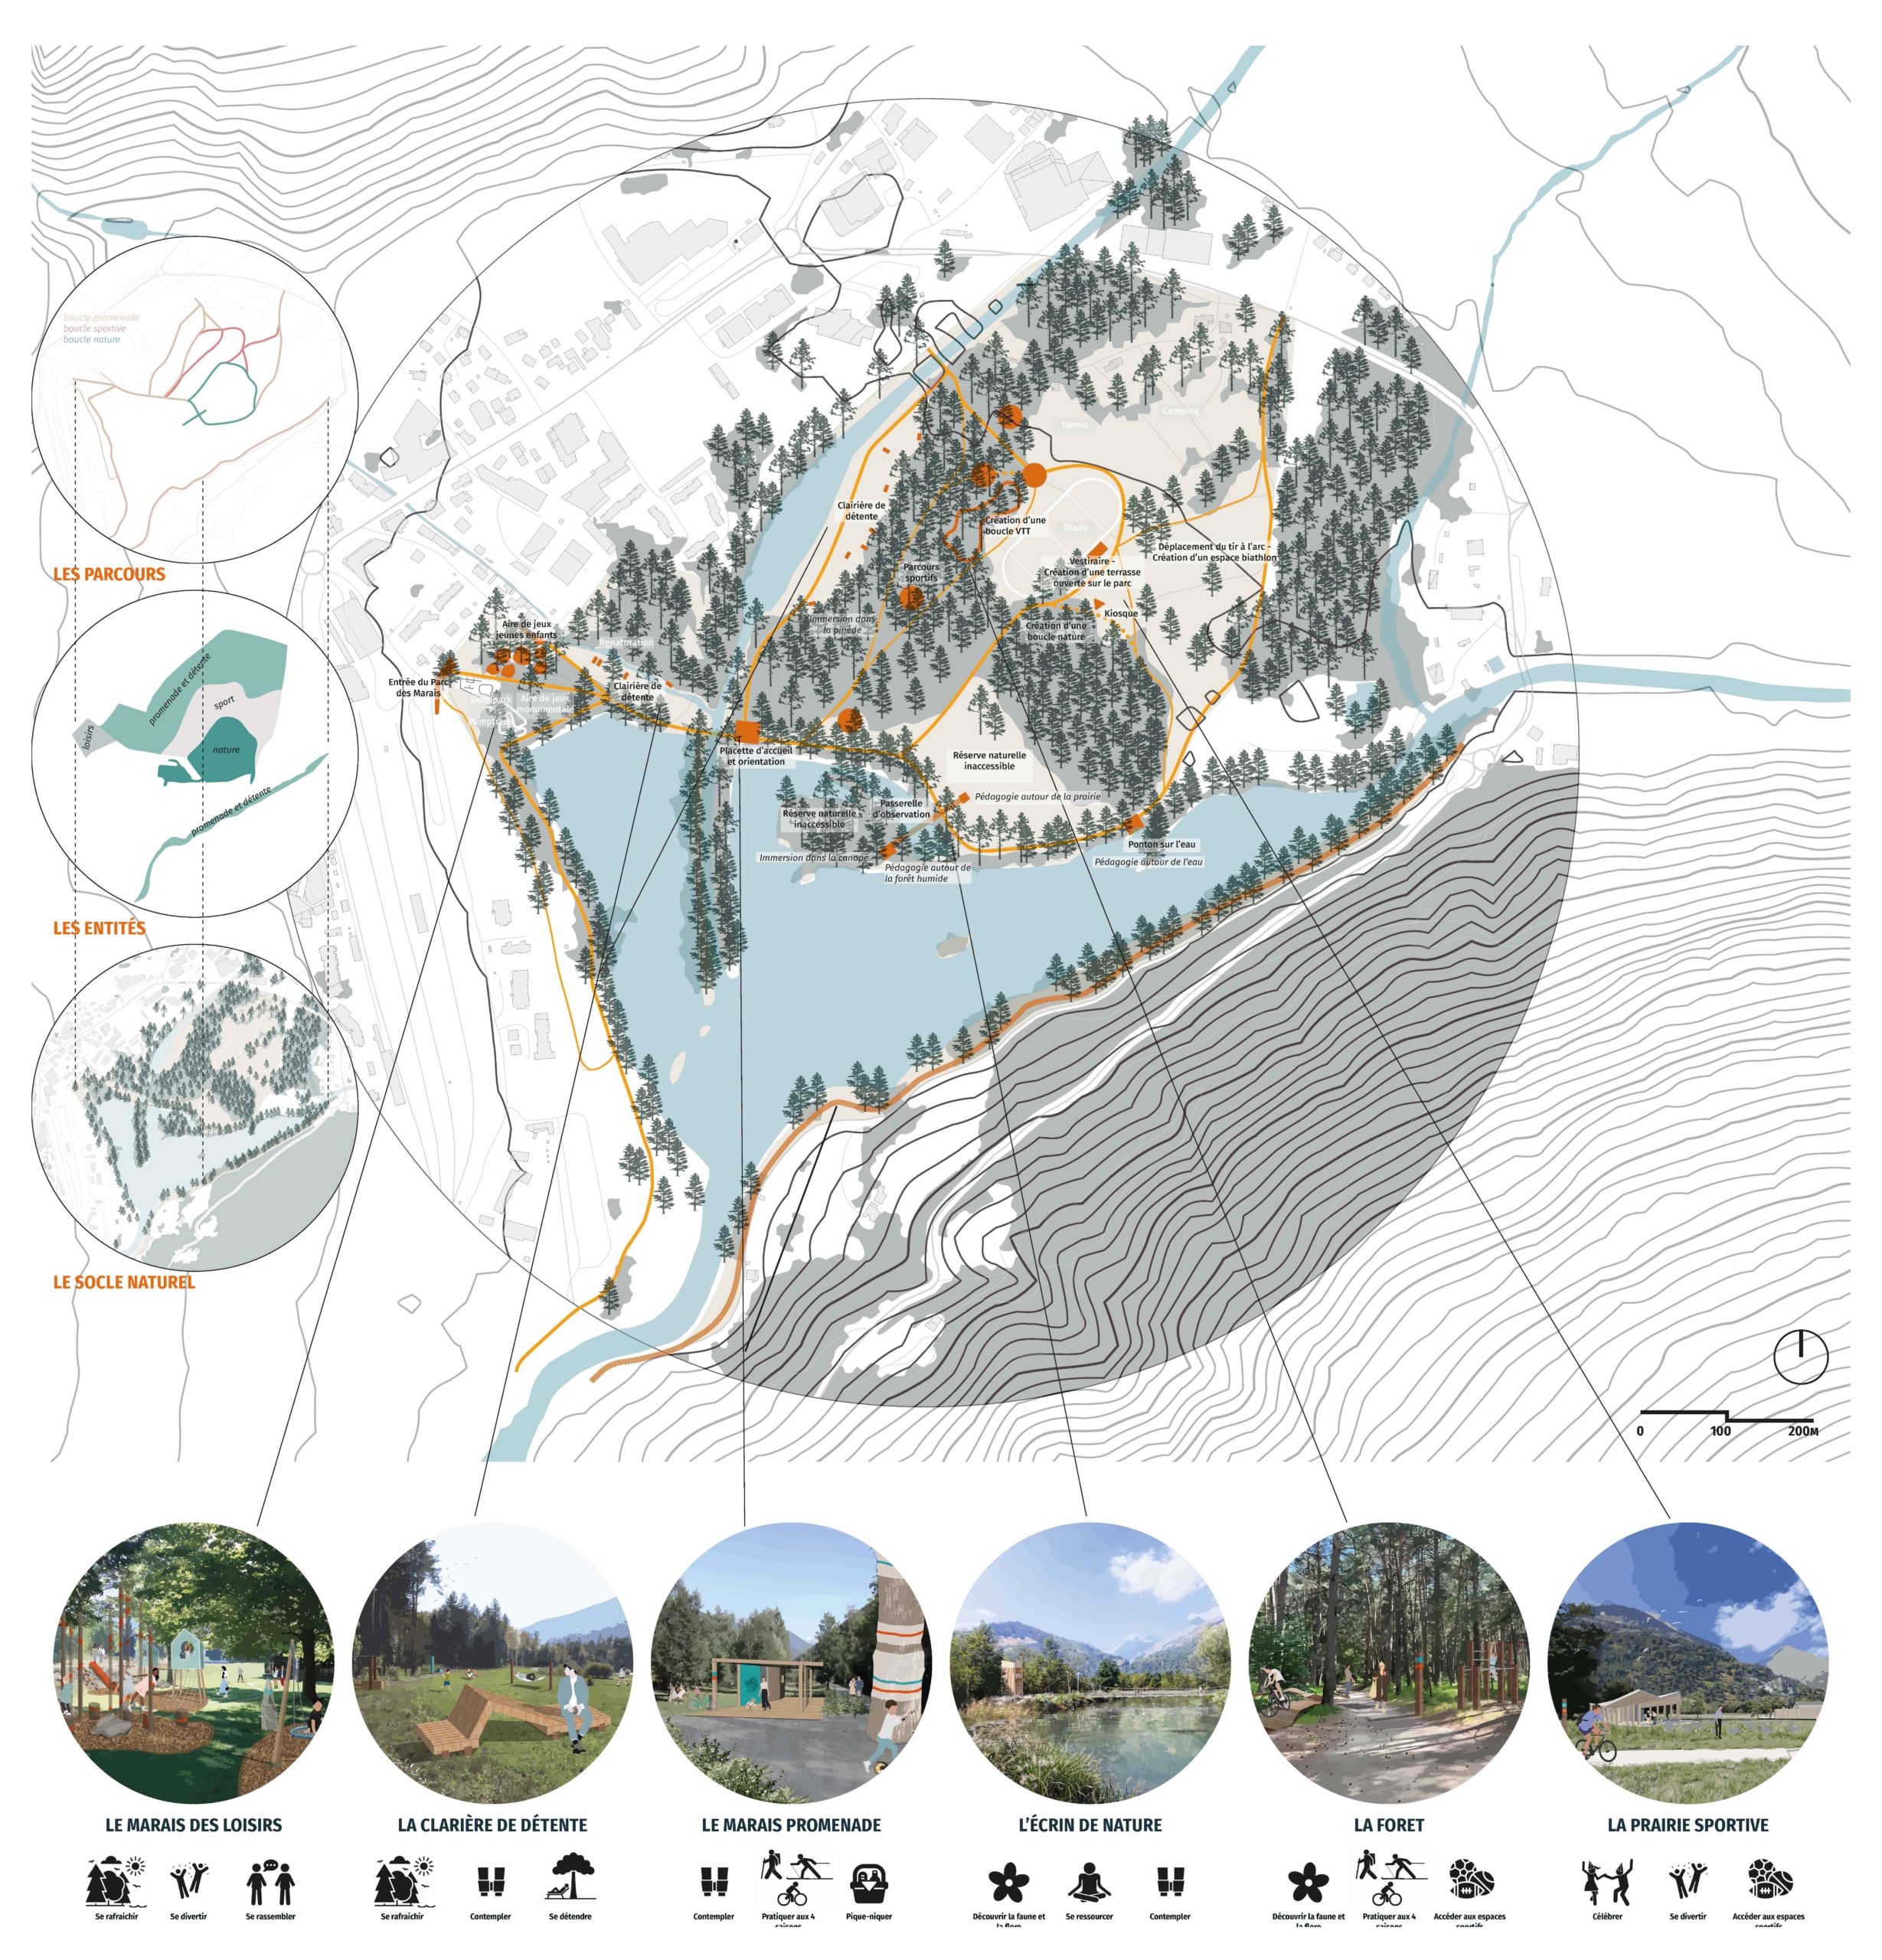 LJN - Paysagiste concepteur - Savoie - Bourg-Saint-Maurice - Marais - Perspective - Site naturel - Montagne- Biodiversité - Tarantaise - Parc - Belvédère - Observatoire